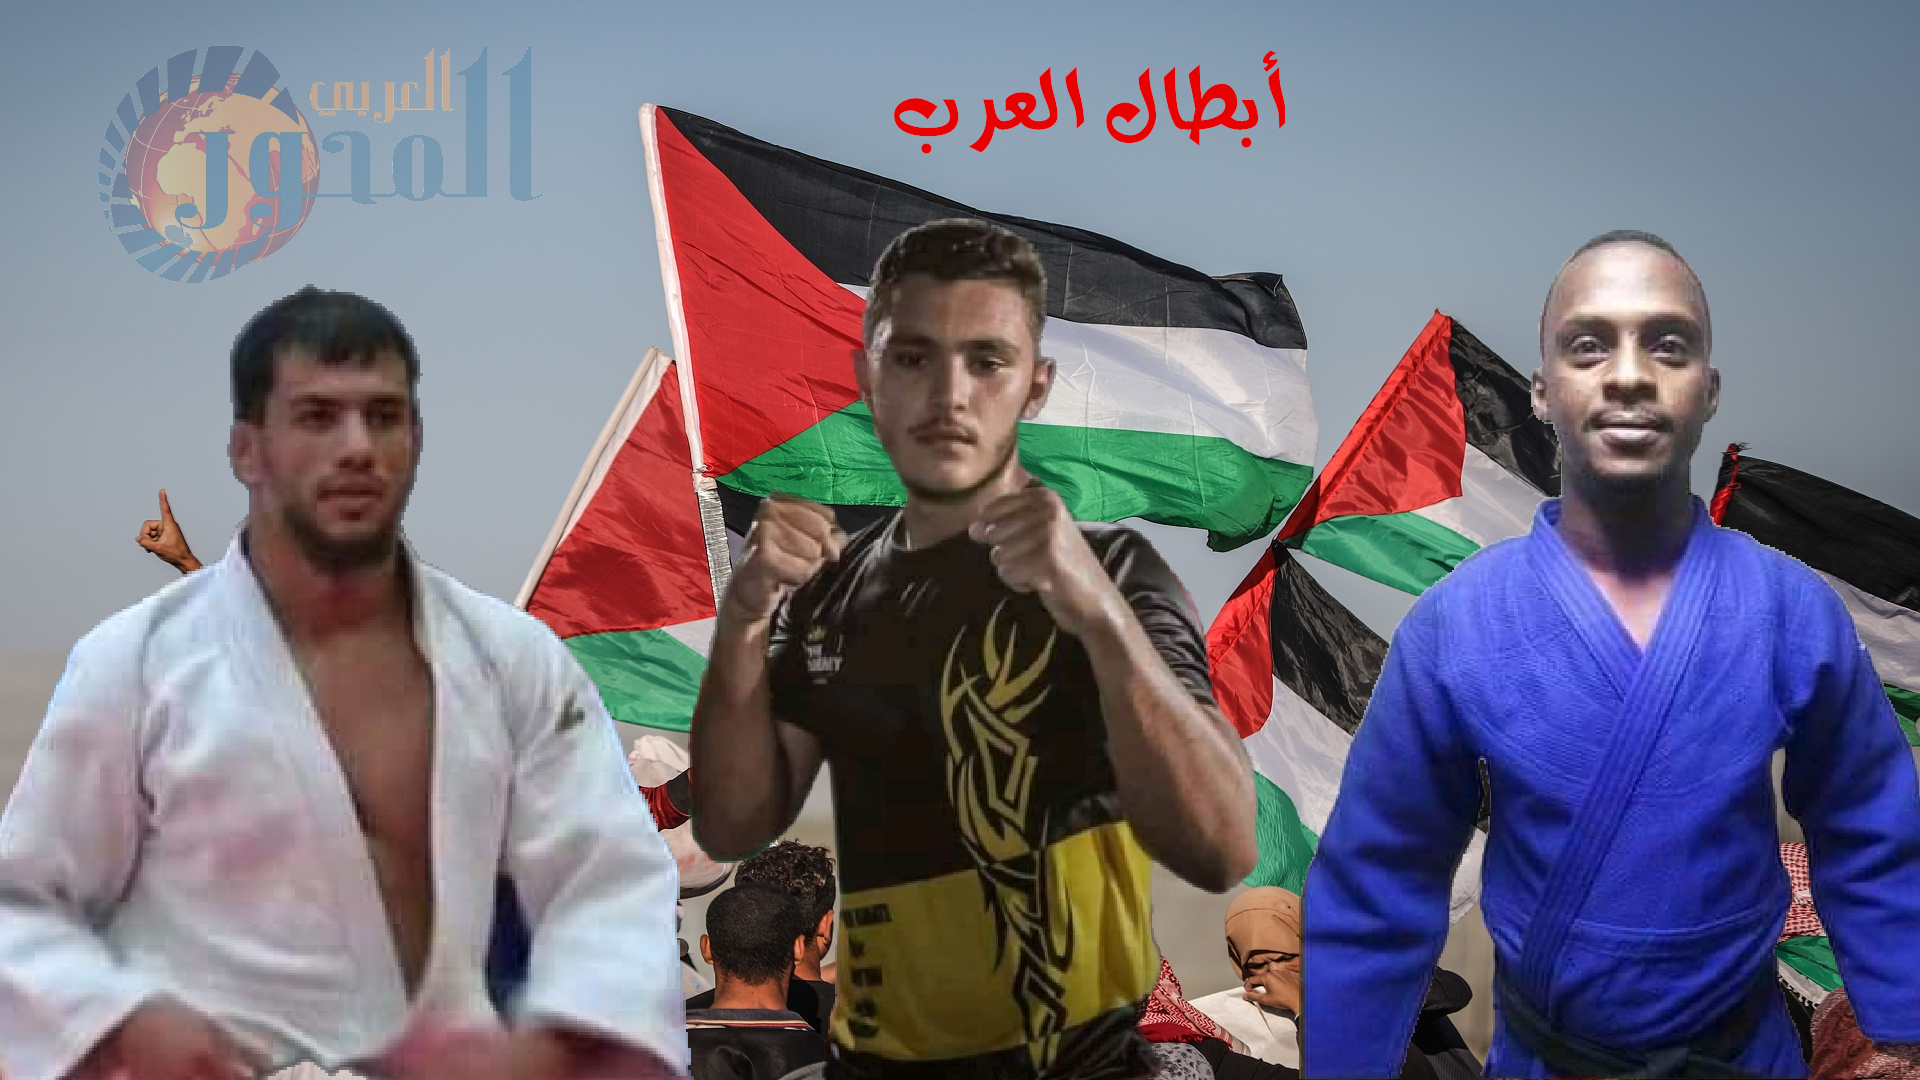 إنسحاب الأبطال الرياضيين العرب….دلالات…بقلم الدكتور بهيج سكاكيني